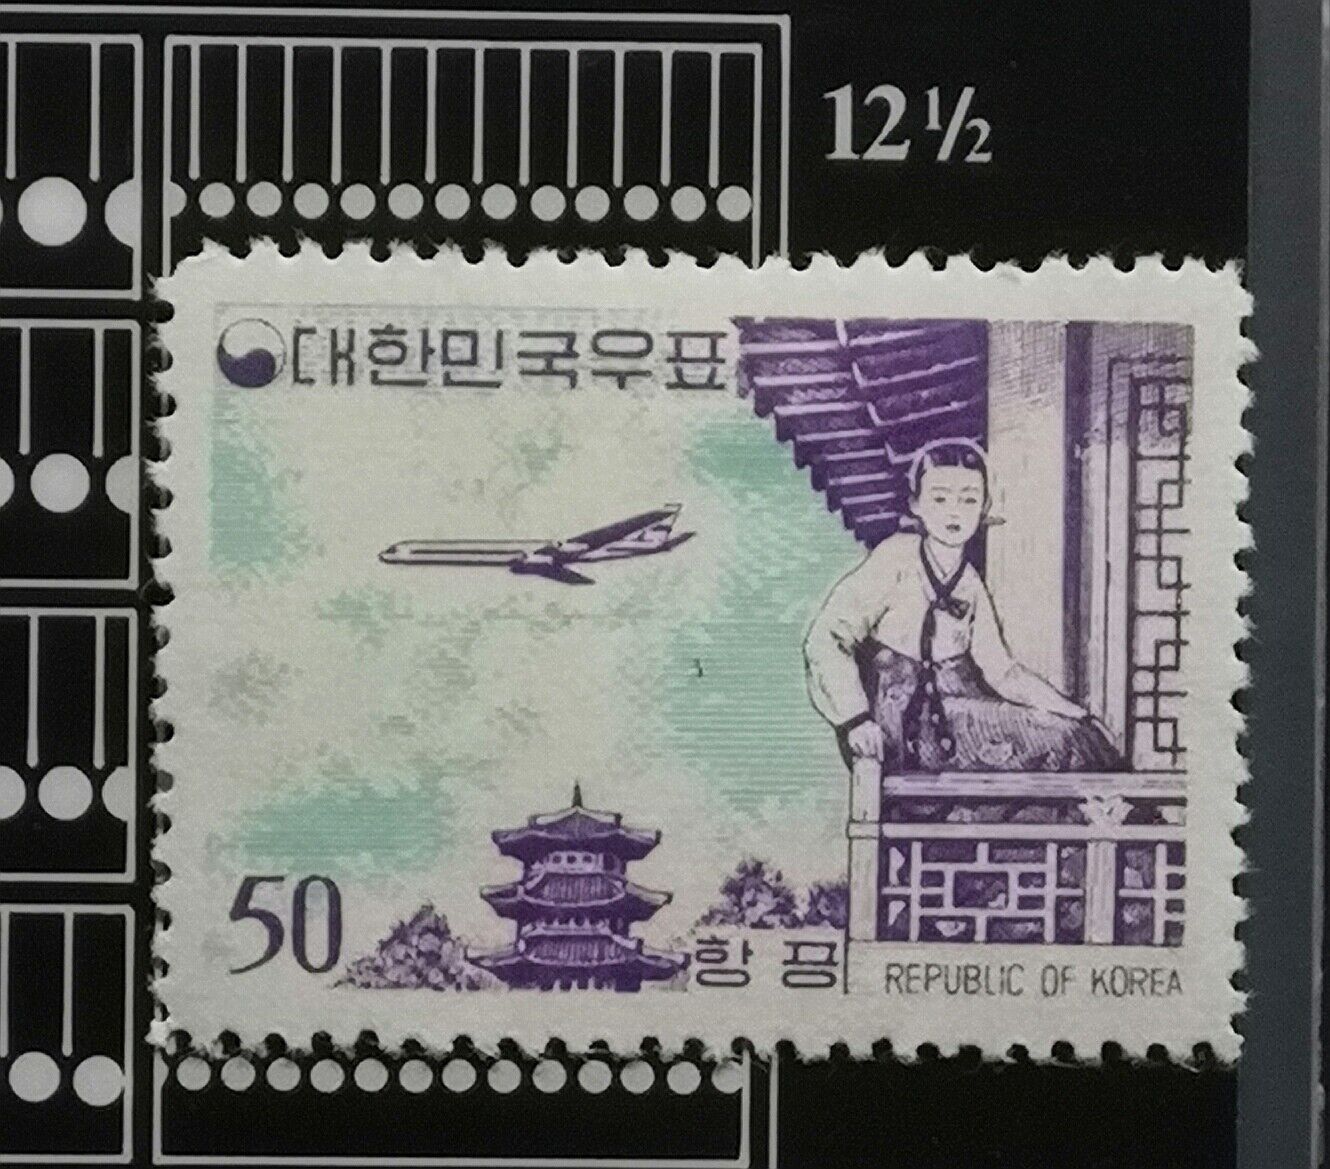 South Korea 1961 Full Set, Original Gum, Unused, perf.12.1/2 Airmail. Без бренда - фотография #3